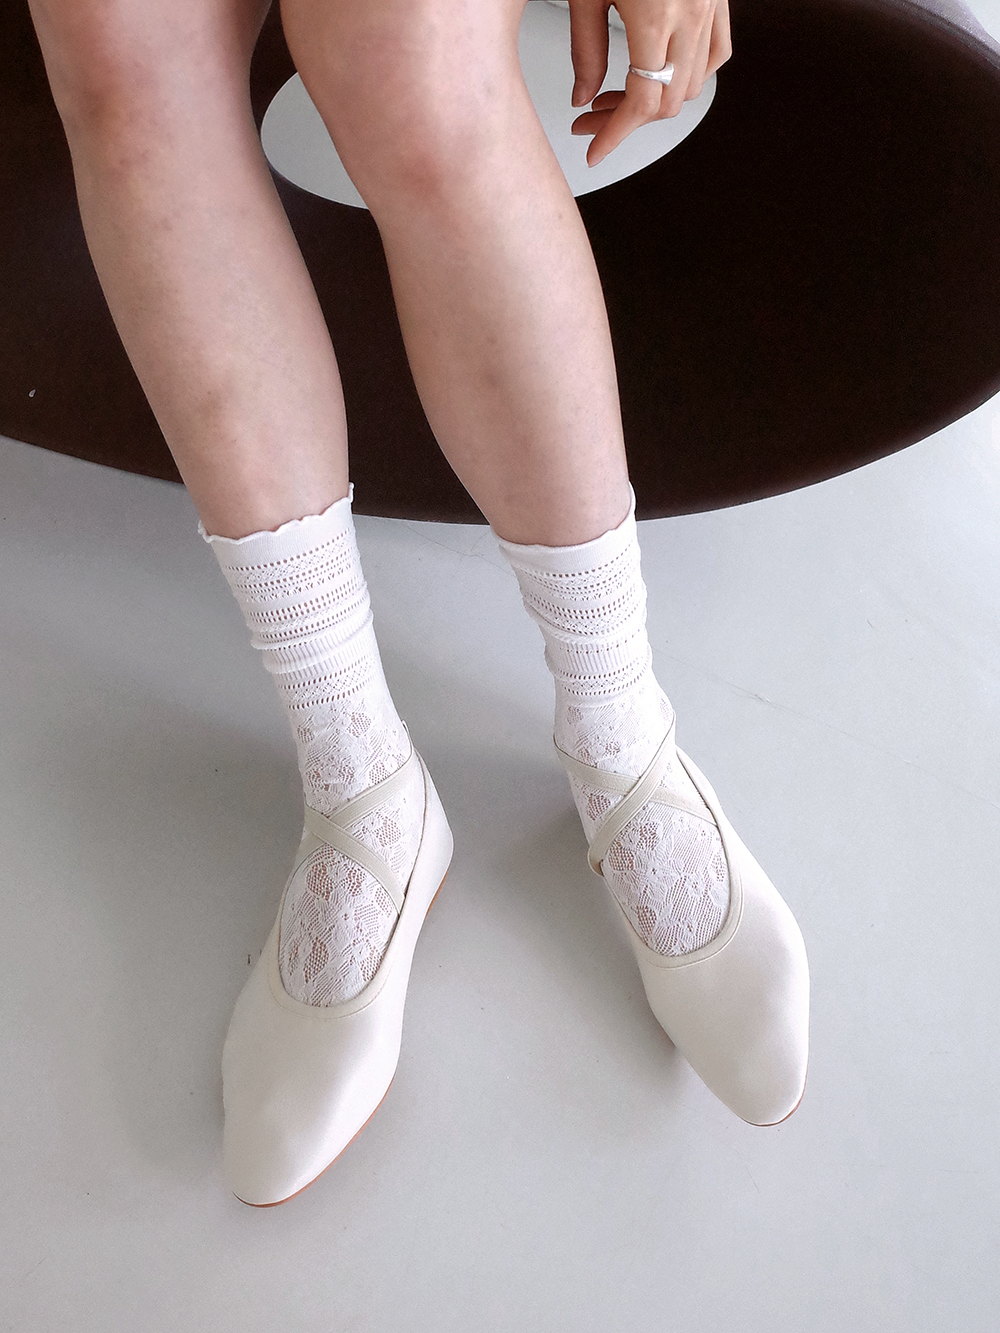 당일발송) x banding ballet shoes